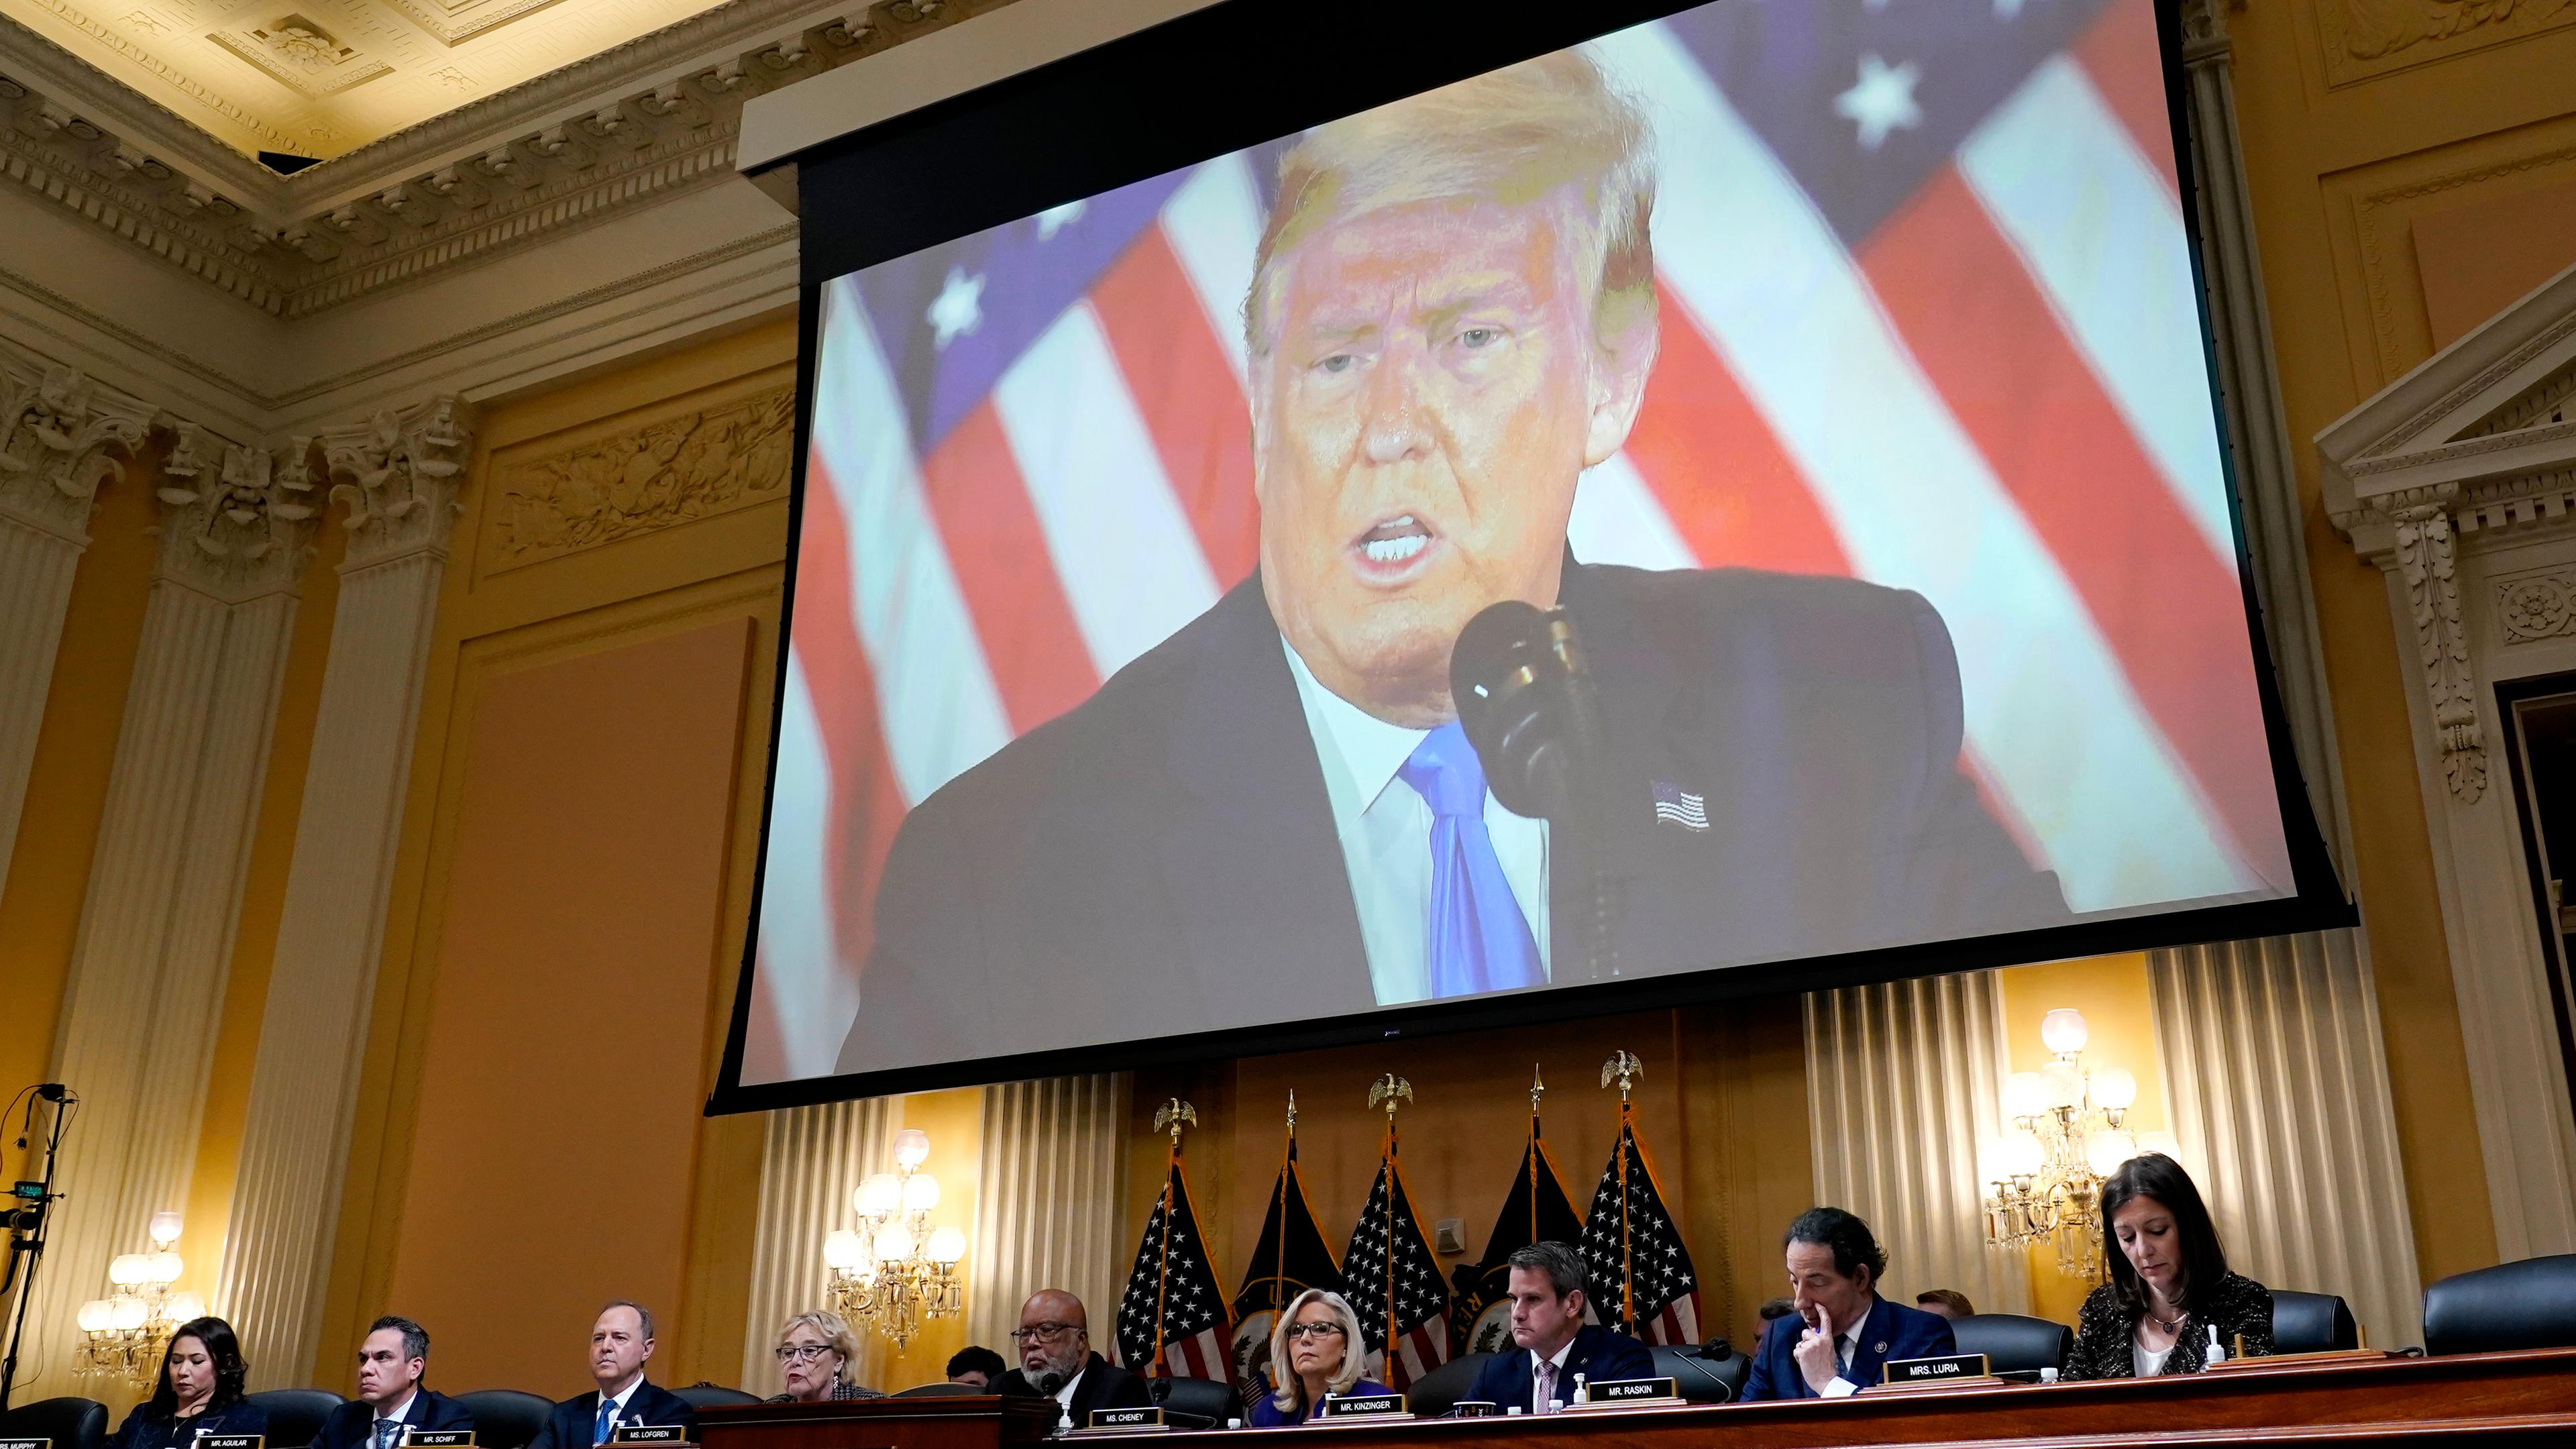 Ein Video des ehemaligen US-Präsidenten Trump wird auf einer Leinwand gezeigt, während der Untersuchungsausschuss zum Sturm auf das Kapitol.